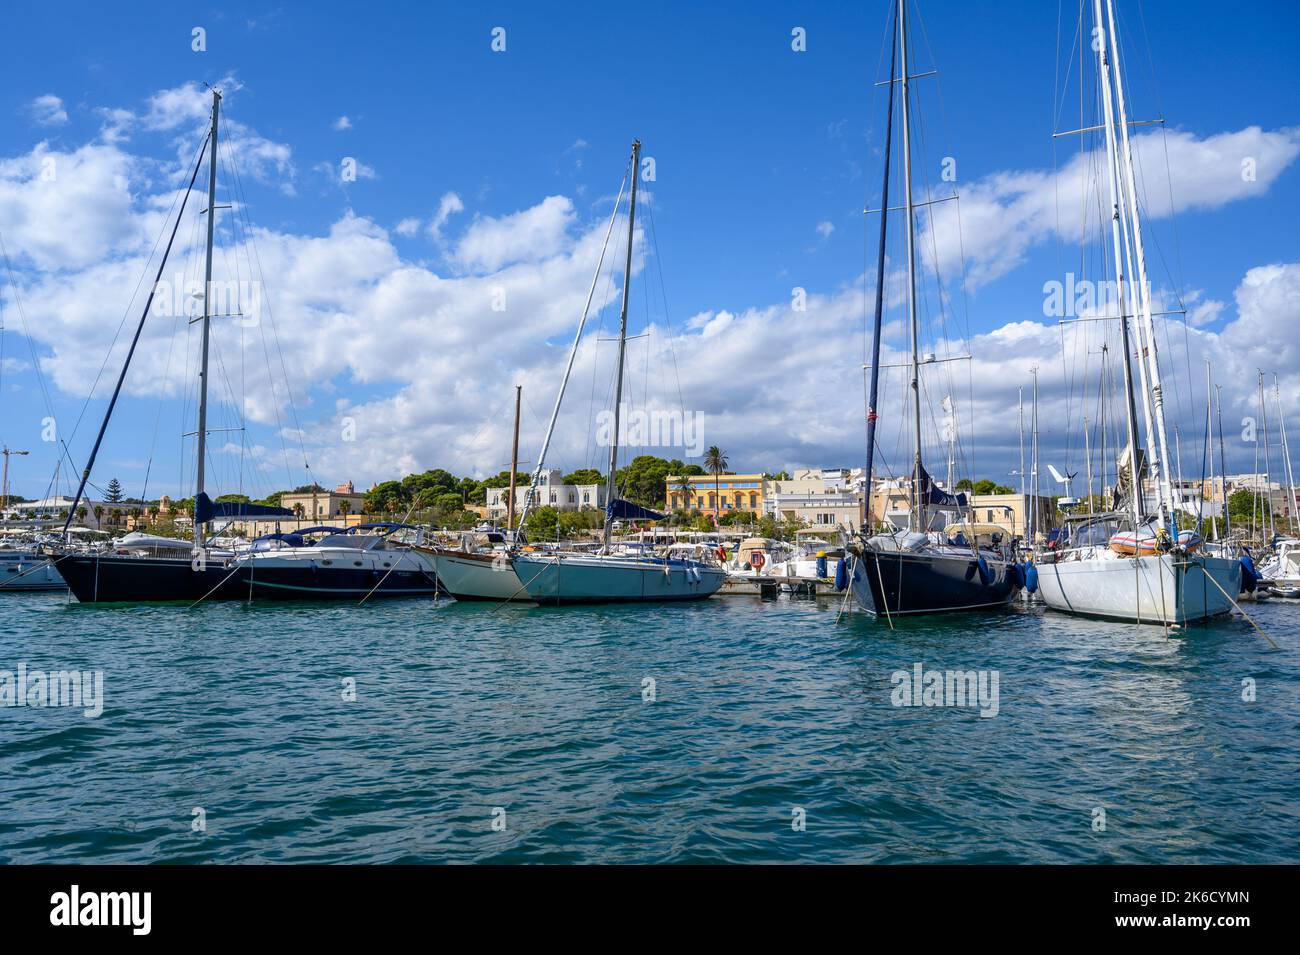 St Maria di Leuca Freizeit Bootshafen mit Uferhäusern im Hintergrund. Apulien (Apulien), Italien. Stockfoto